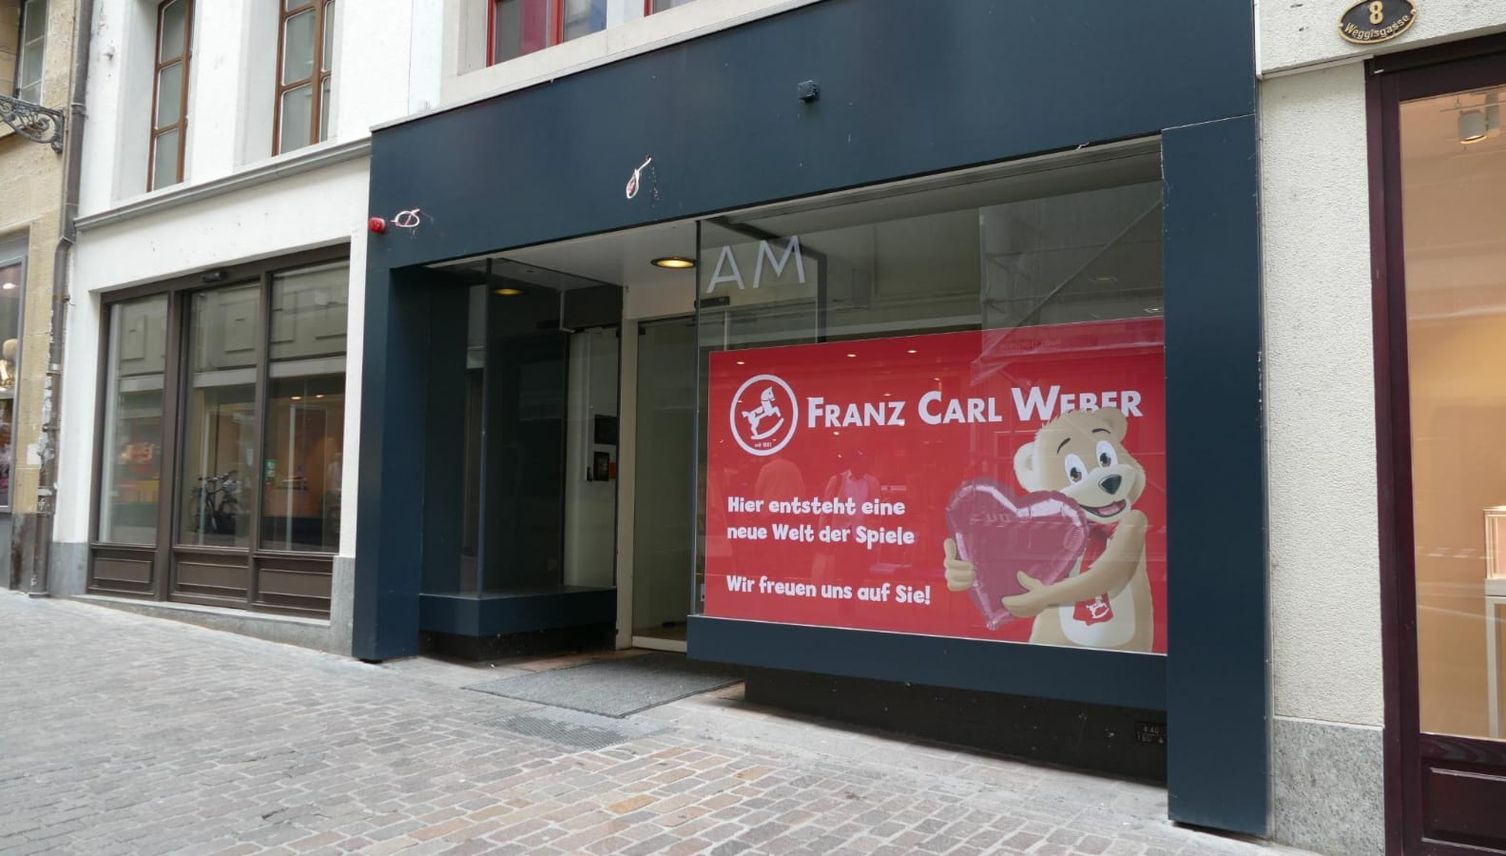 Wann der neue Franz Carl Weber in Luzern eröffnen wird